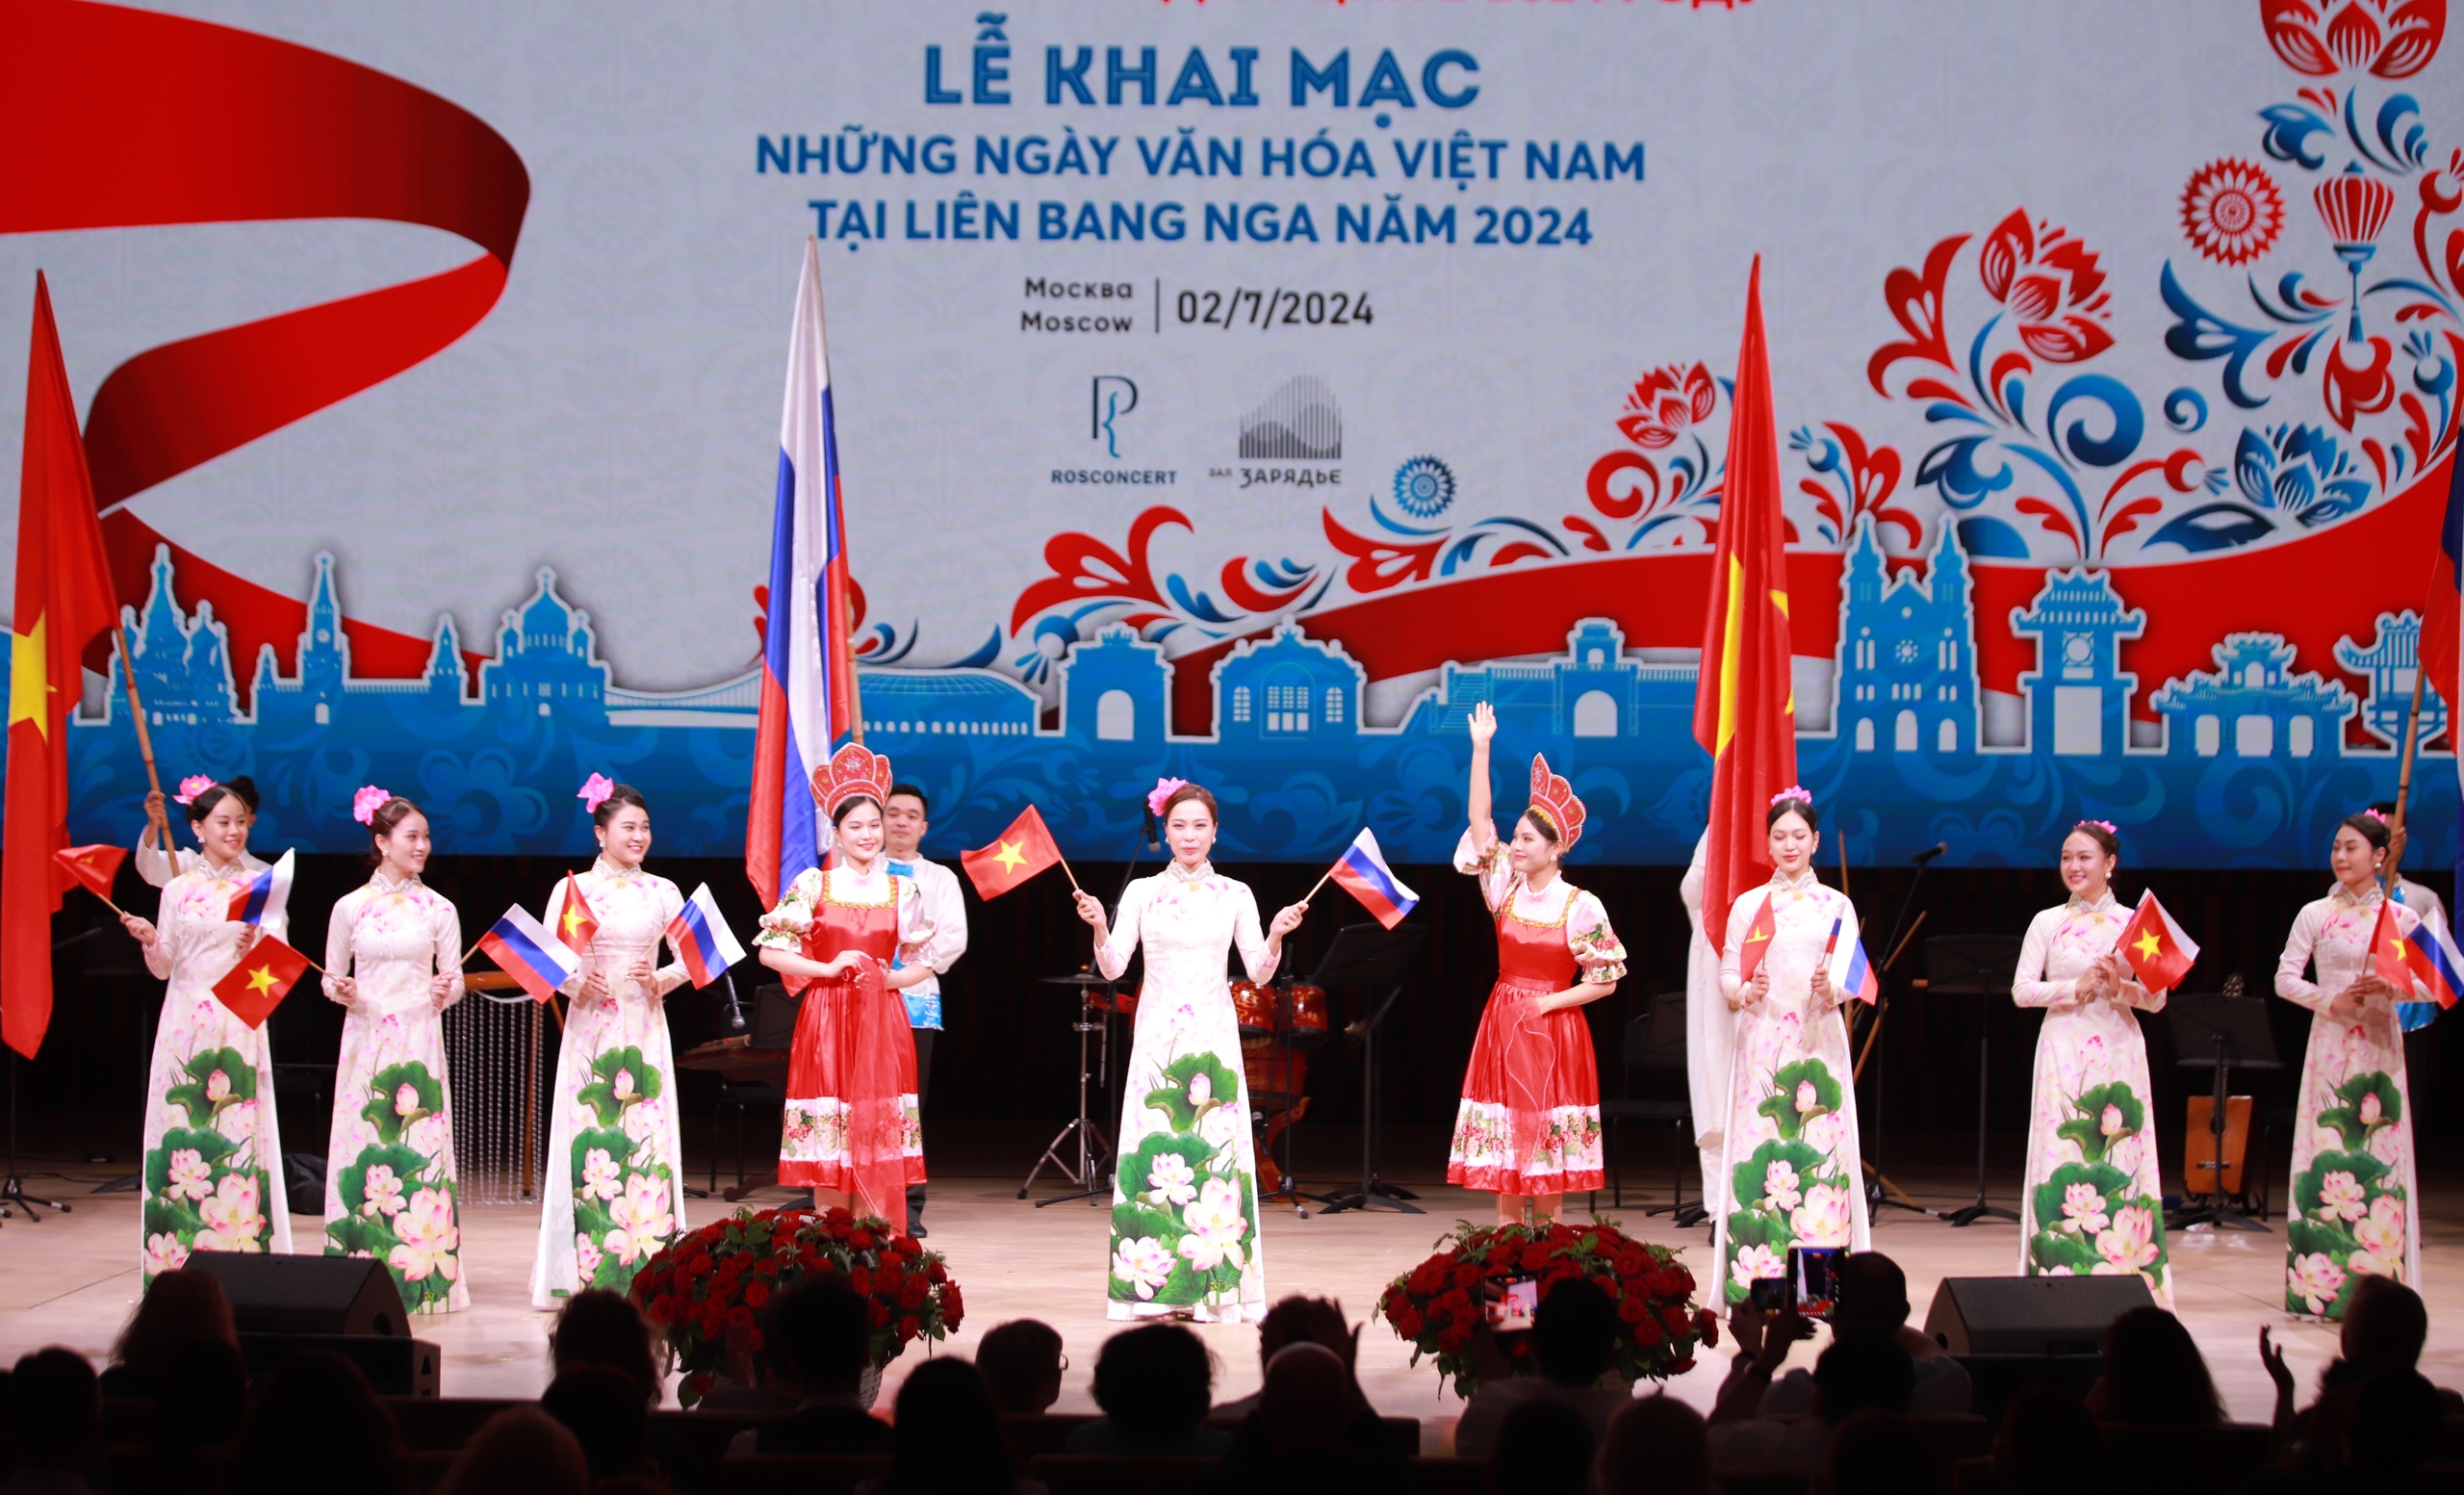 Chùm ảnh: Đặc sắc đêm khai màn Những ngày văn hóa Việt Nam tại Liên bang Nga - Ảnh 24.